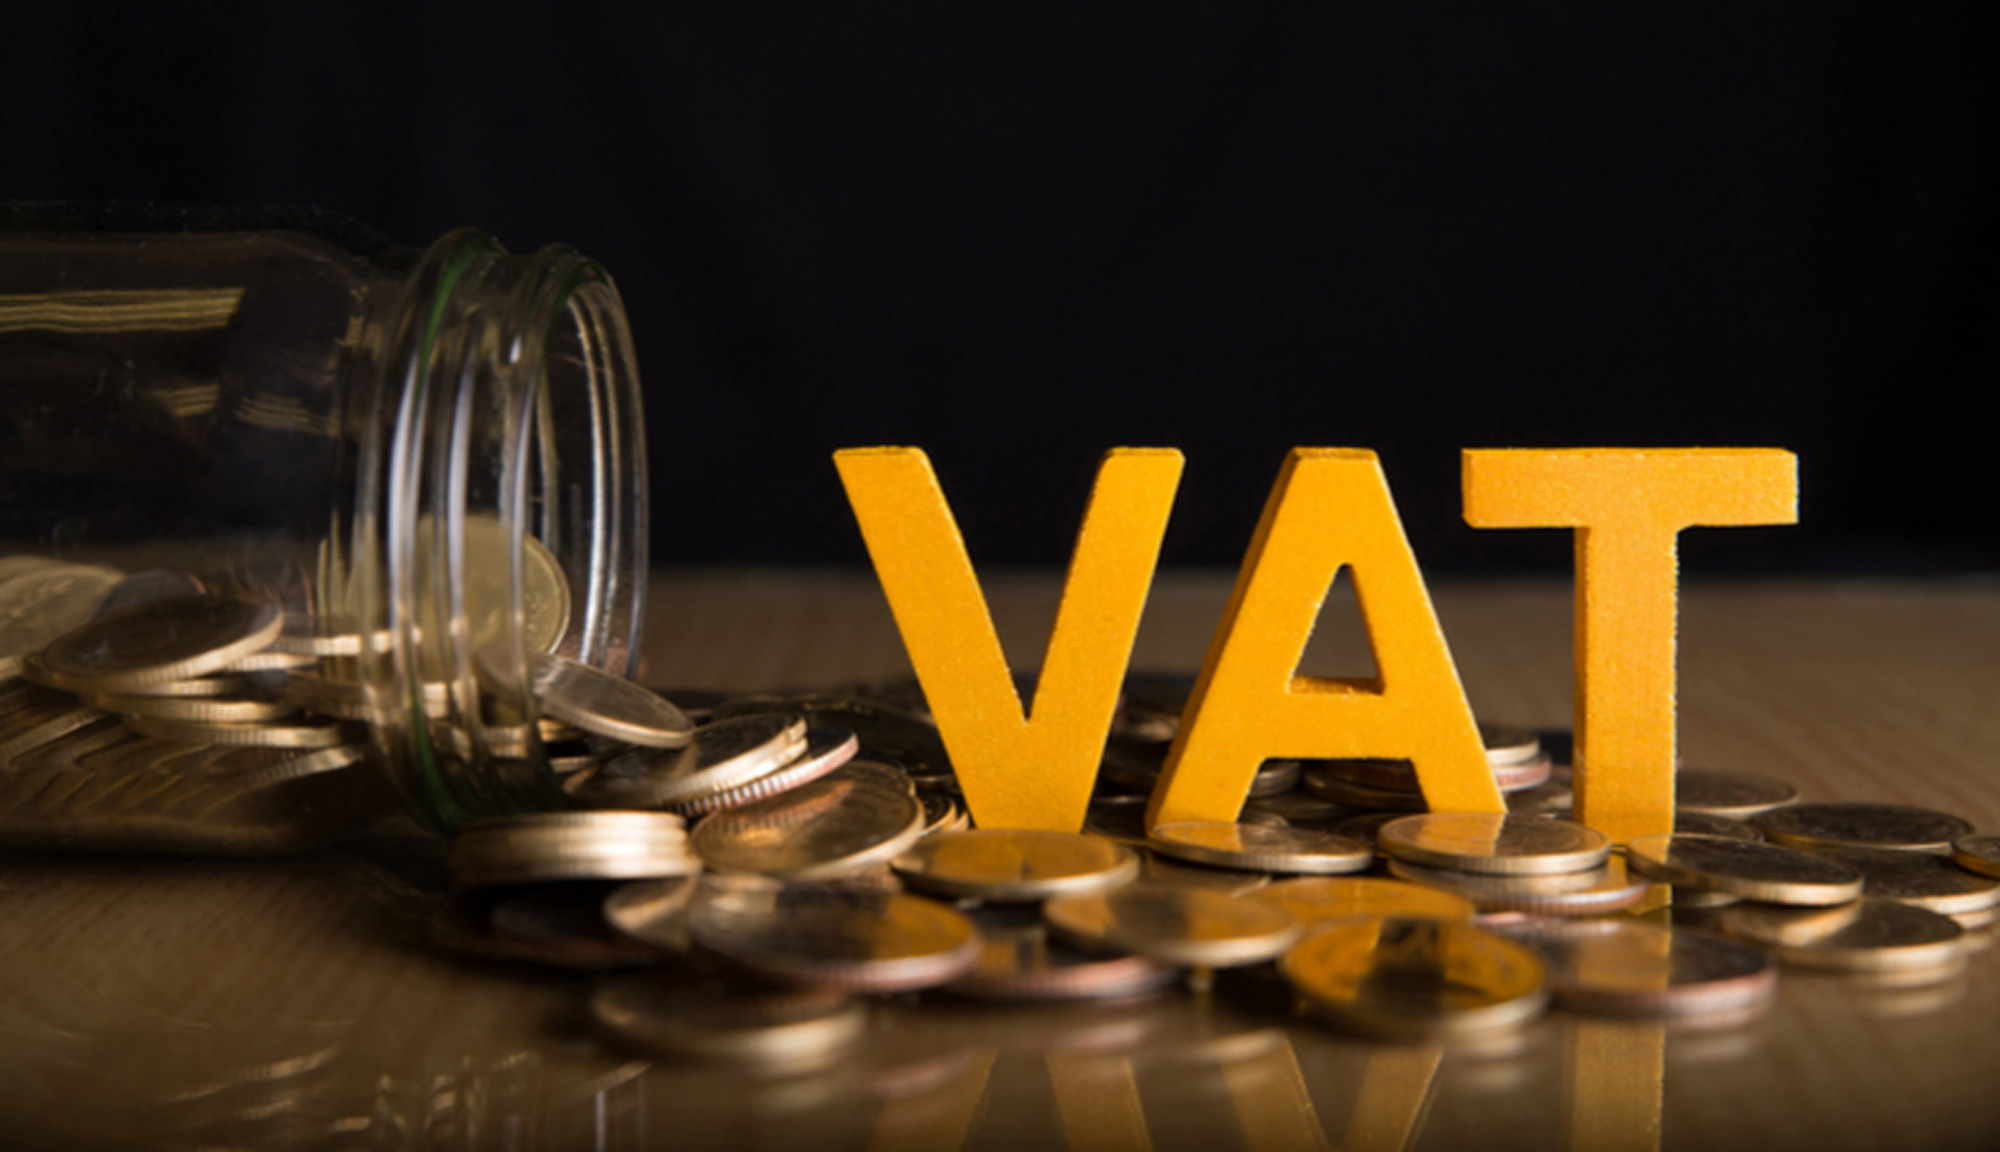 Thuế VAT là gì? Xuất hóa đơn GTGT (VAT) tại Vender